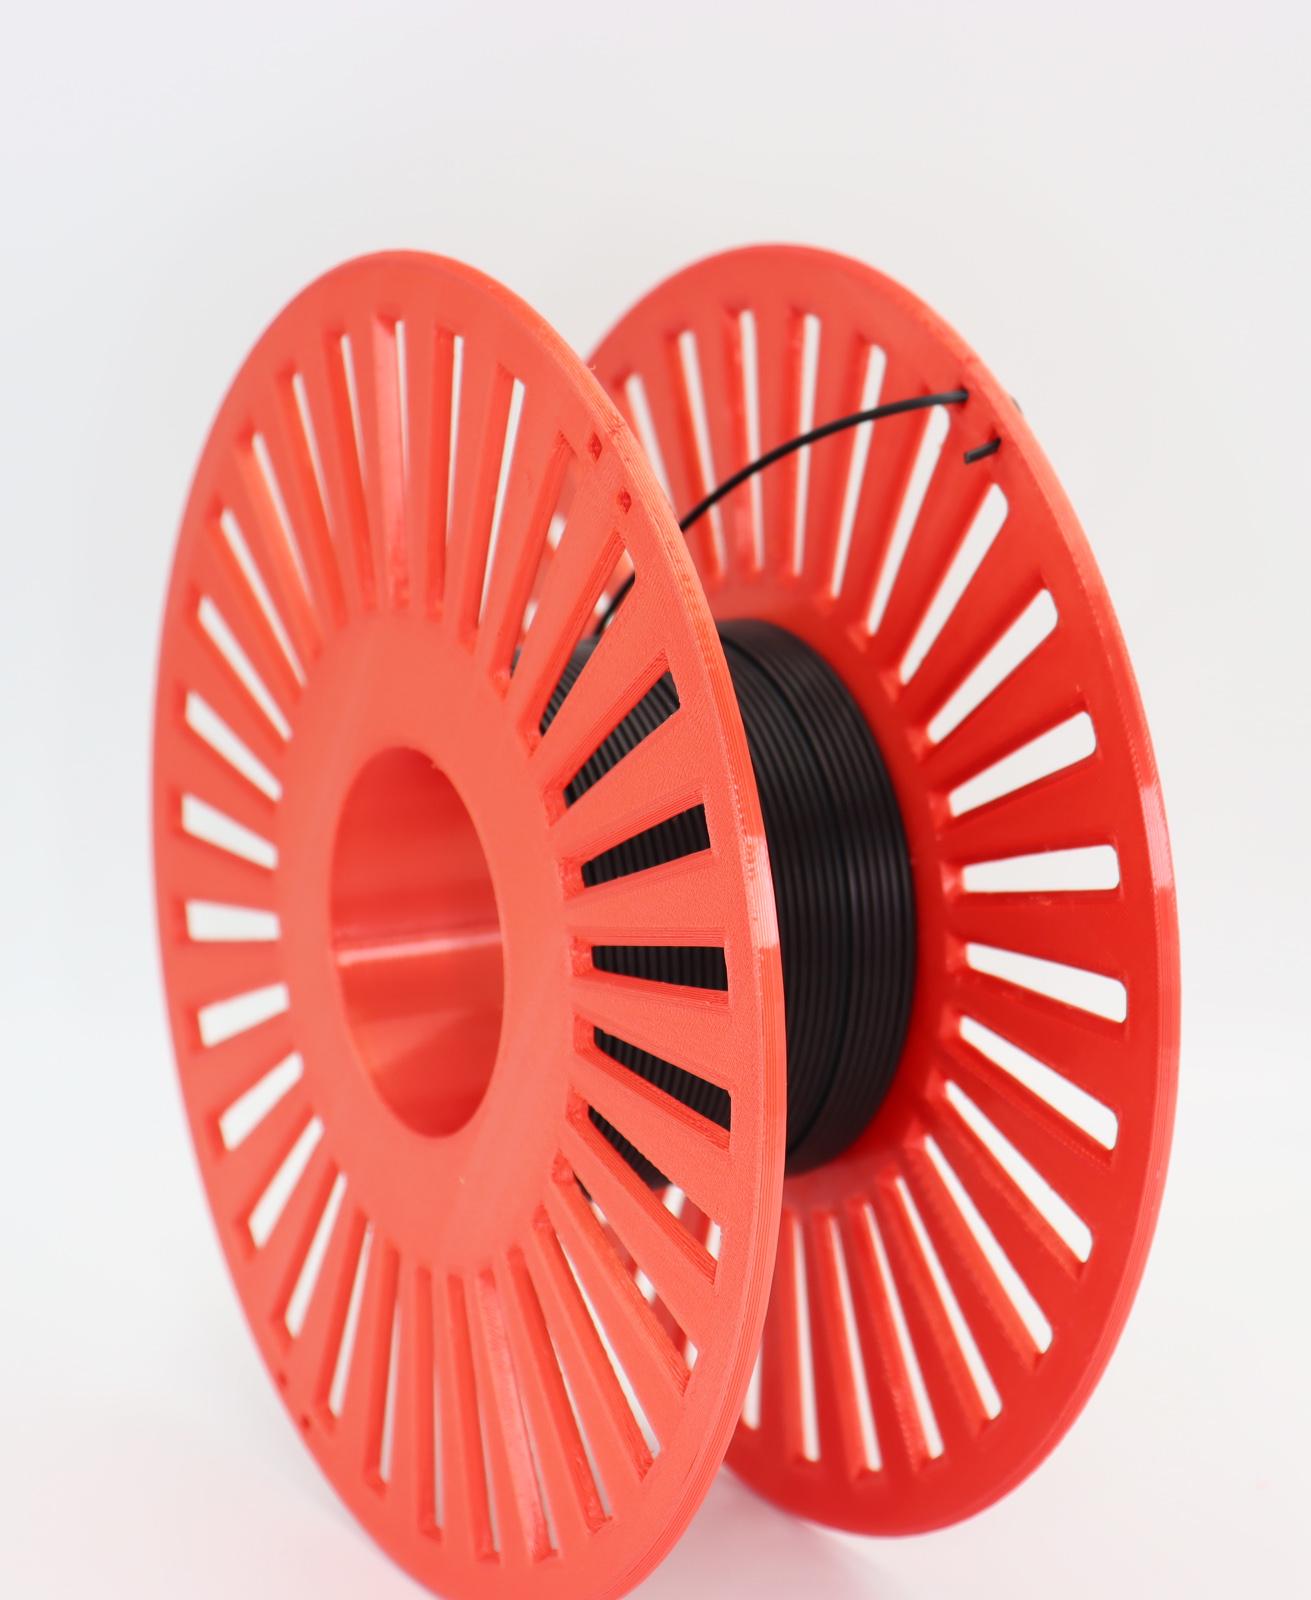 Filament spool 3d model